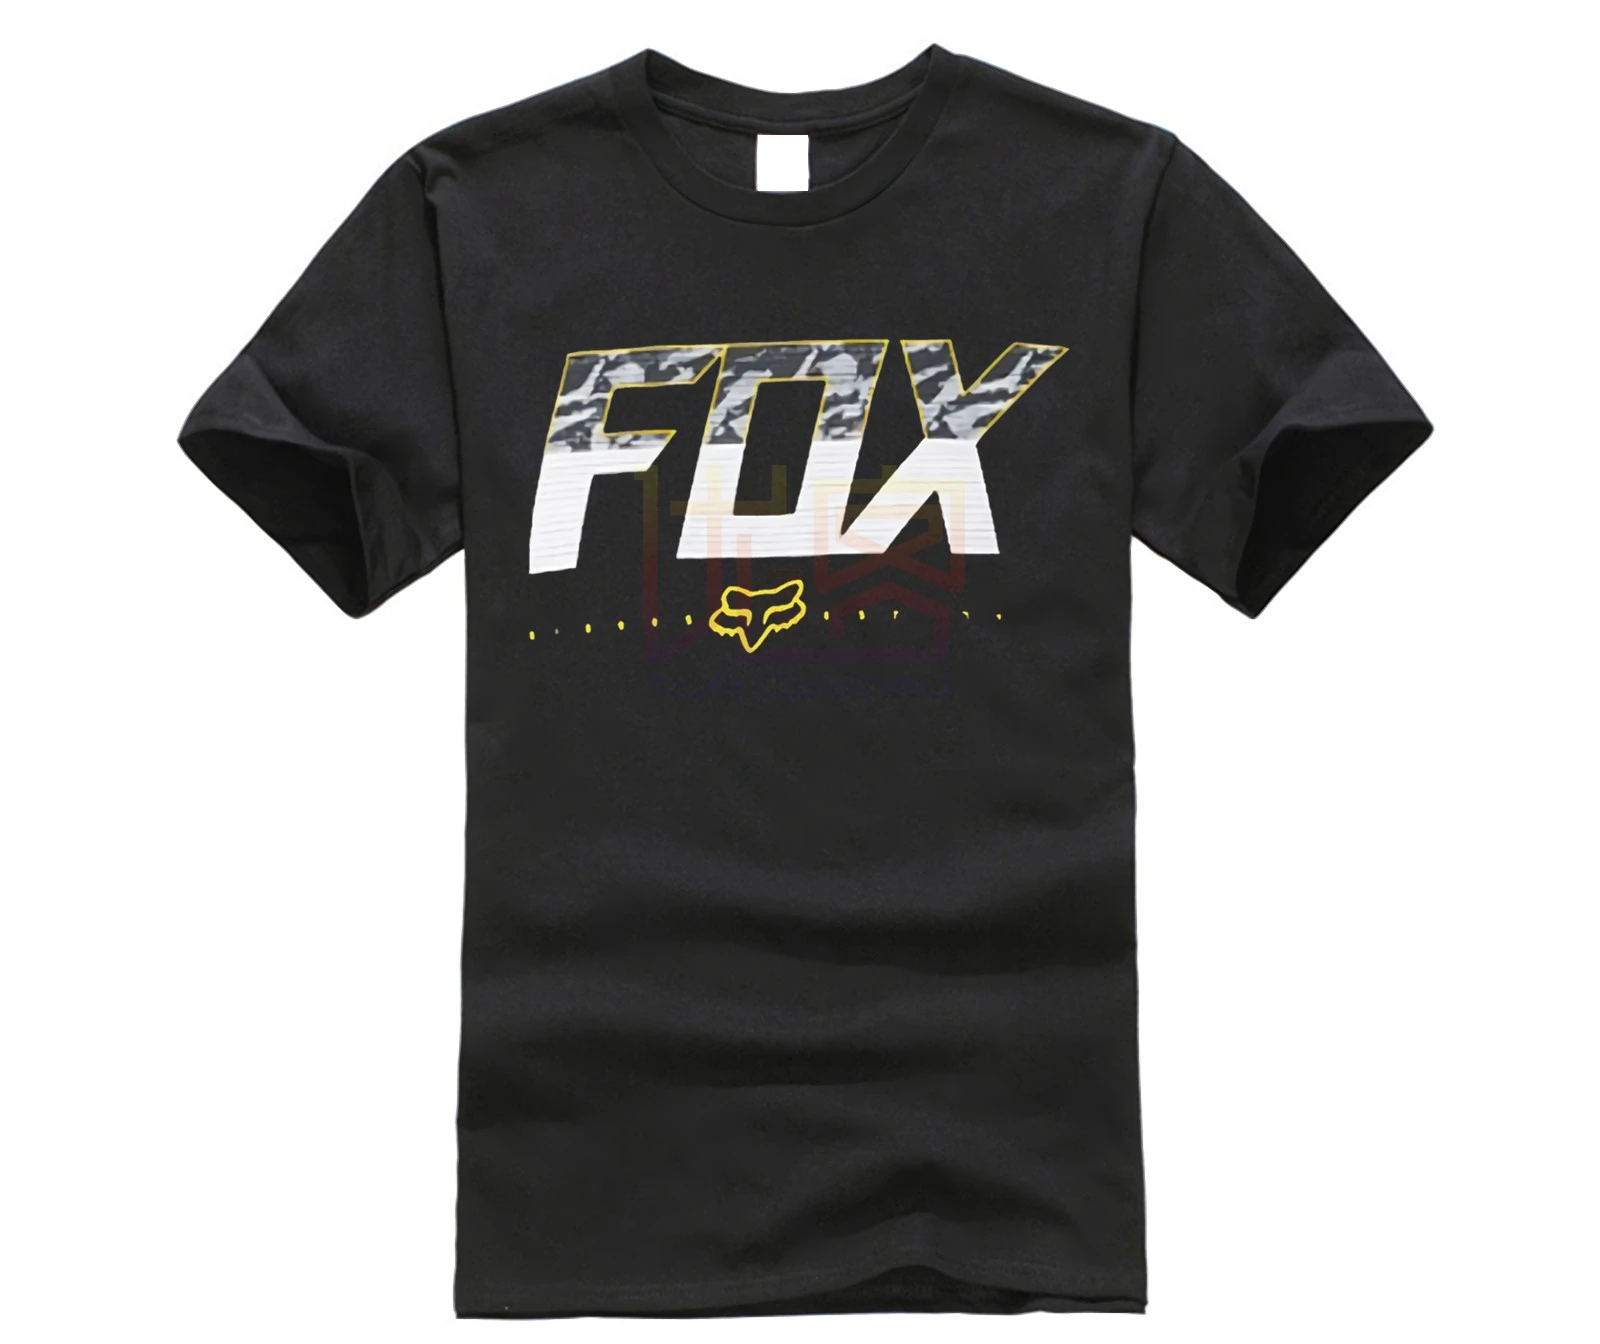 

Fox Mtb Ranger Mens T-shirt - Black All Sizes Mens 2019 fashion Brand T Shirt O-Neck 100%cotton custom printed T-Shirt Tops Tee